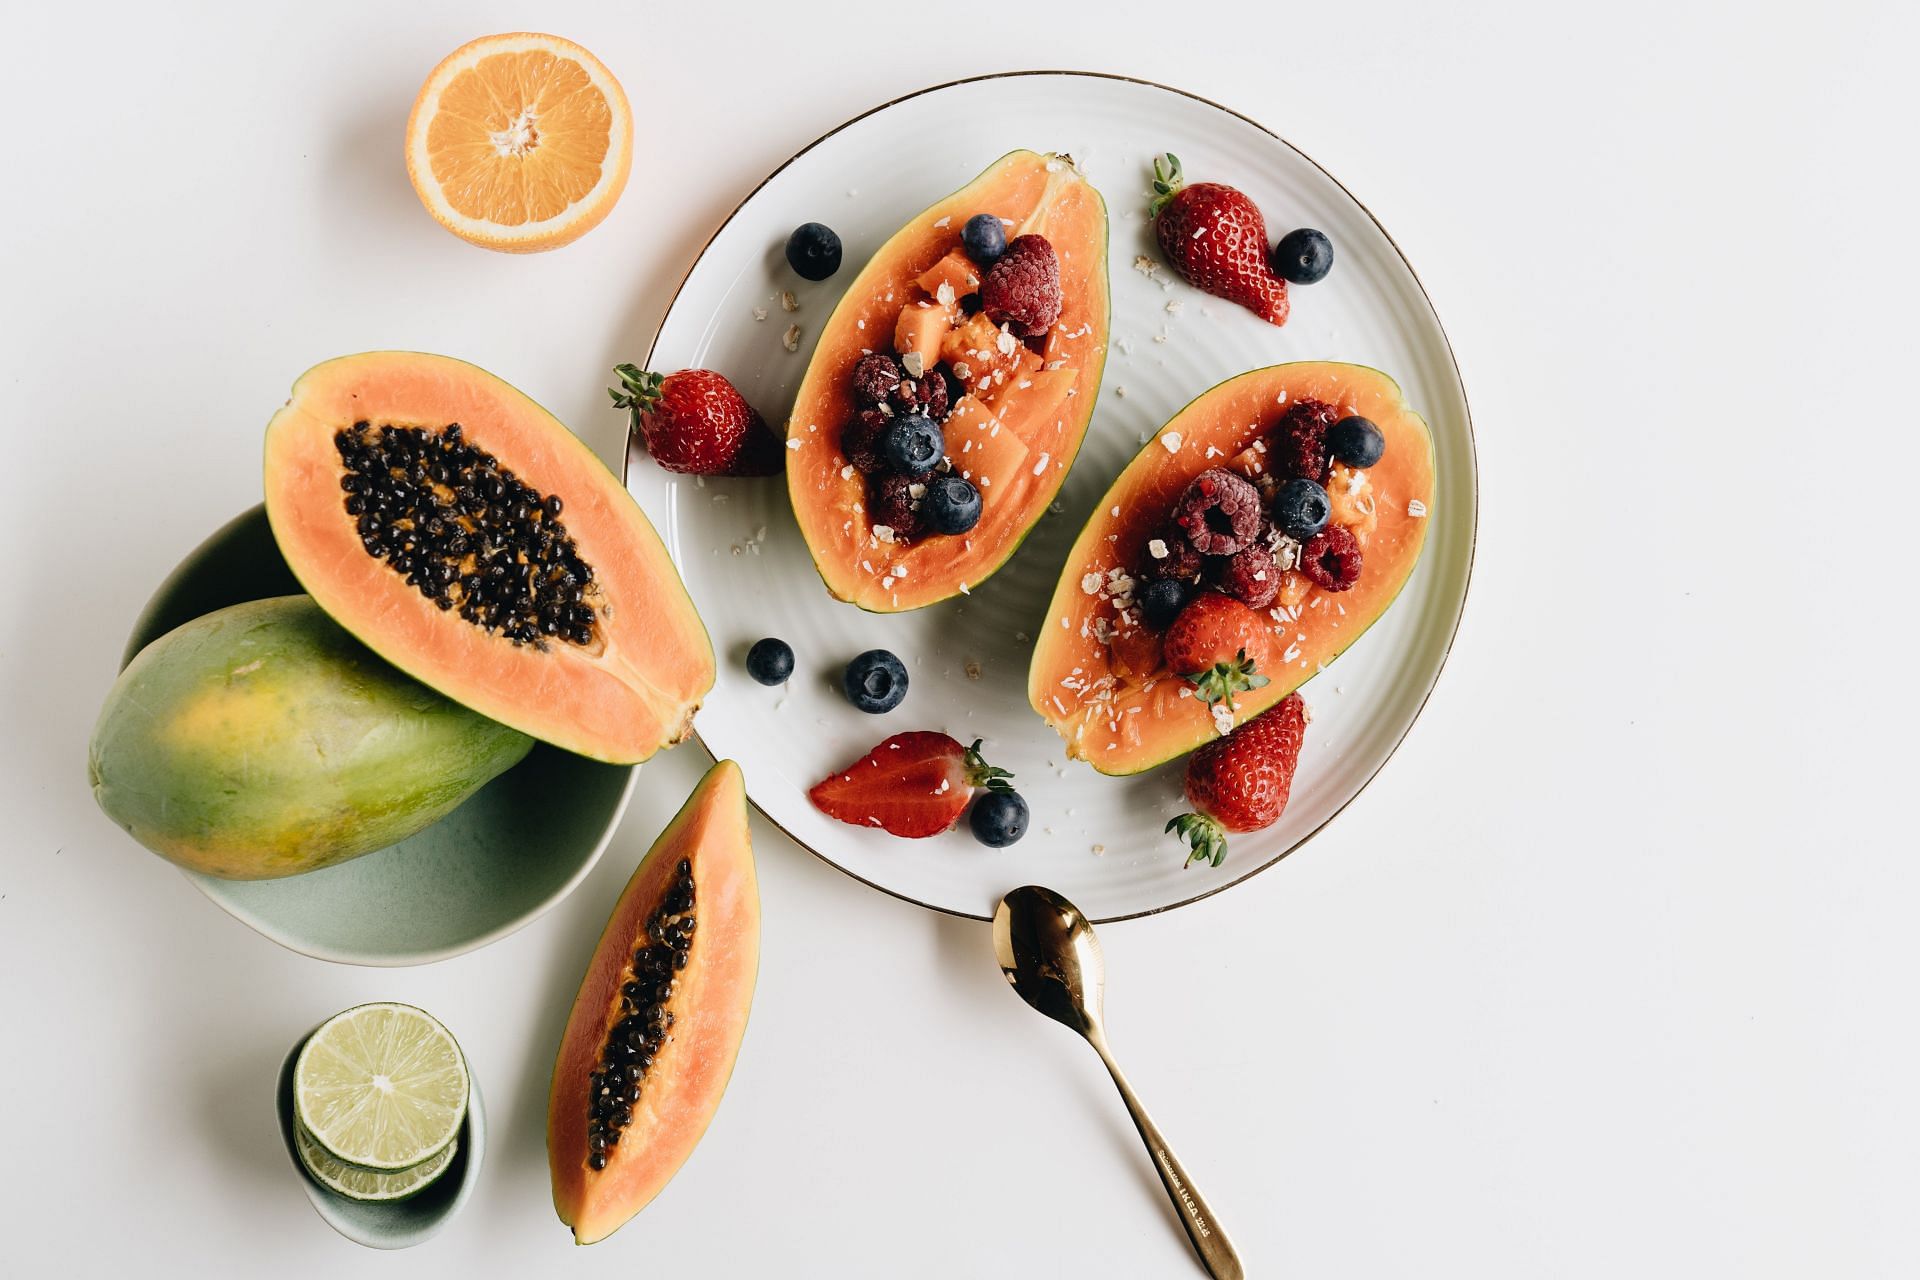 Papaya has many health benefits. (Image via Pexels/ Alleksana)